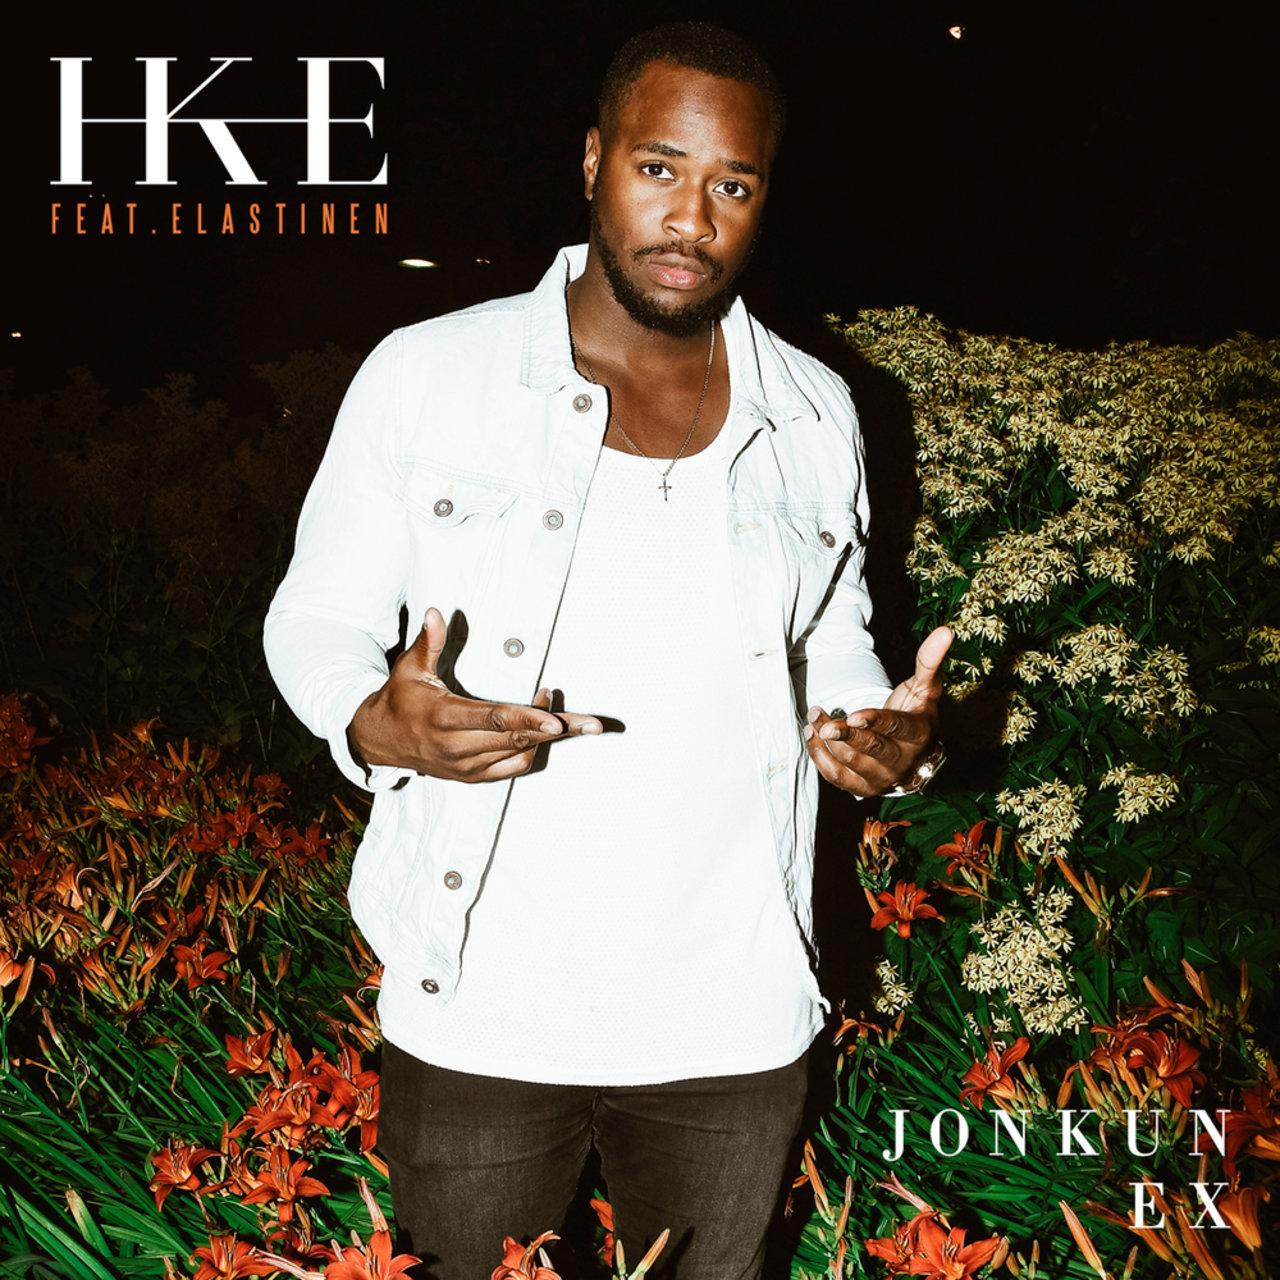 IKE – Jonkun Ex (feat. Elastinen)